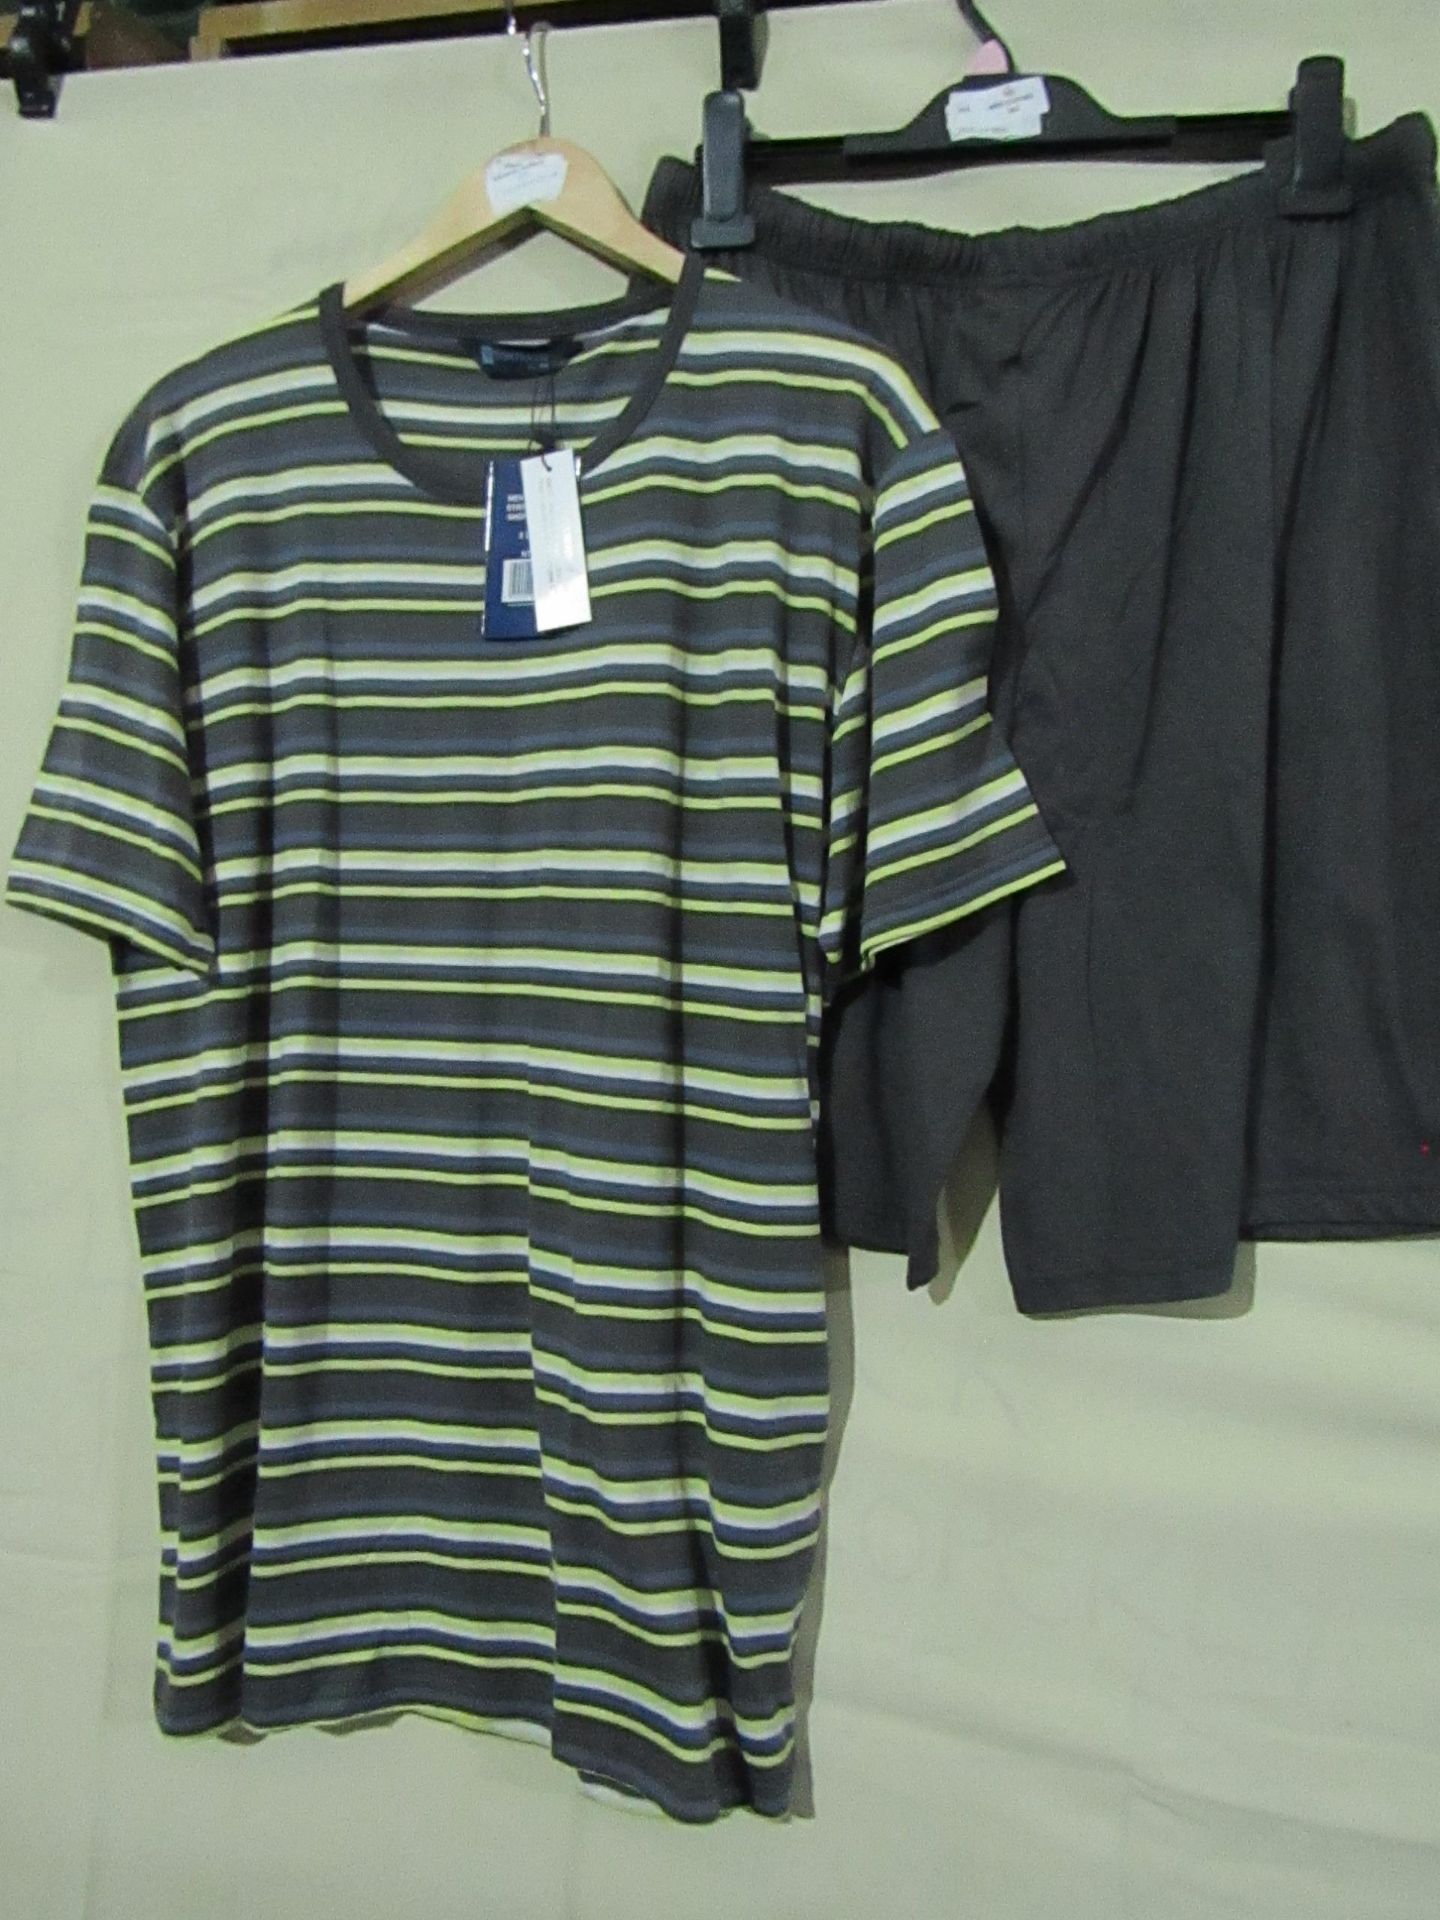 Tom Franks Mens Striped Top & Short Pyjama Set Size Med New & Packaged